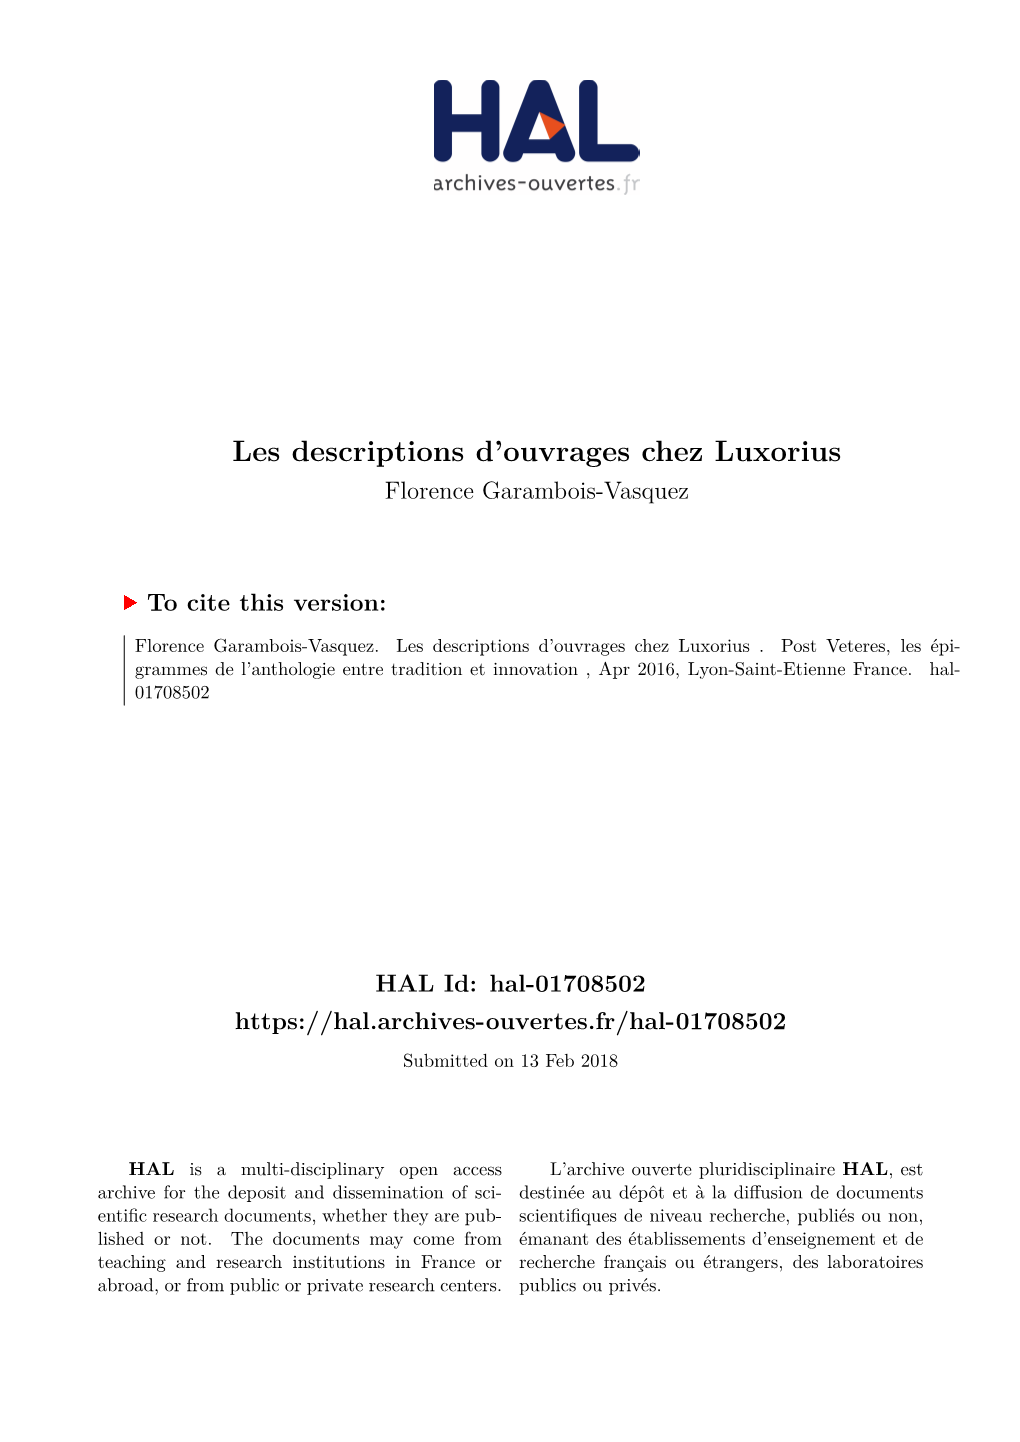 Les Descriptions D'ouvrages Chez Luxorius